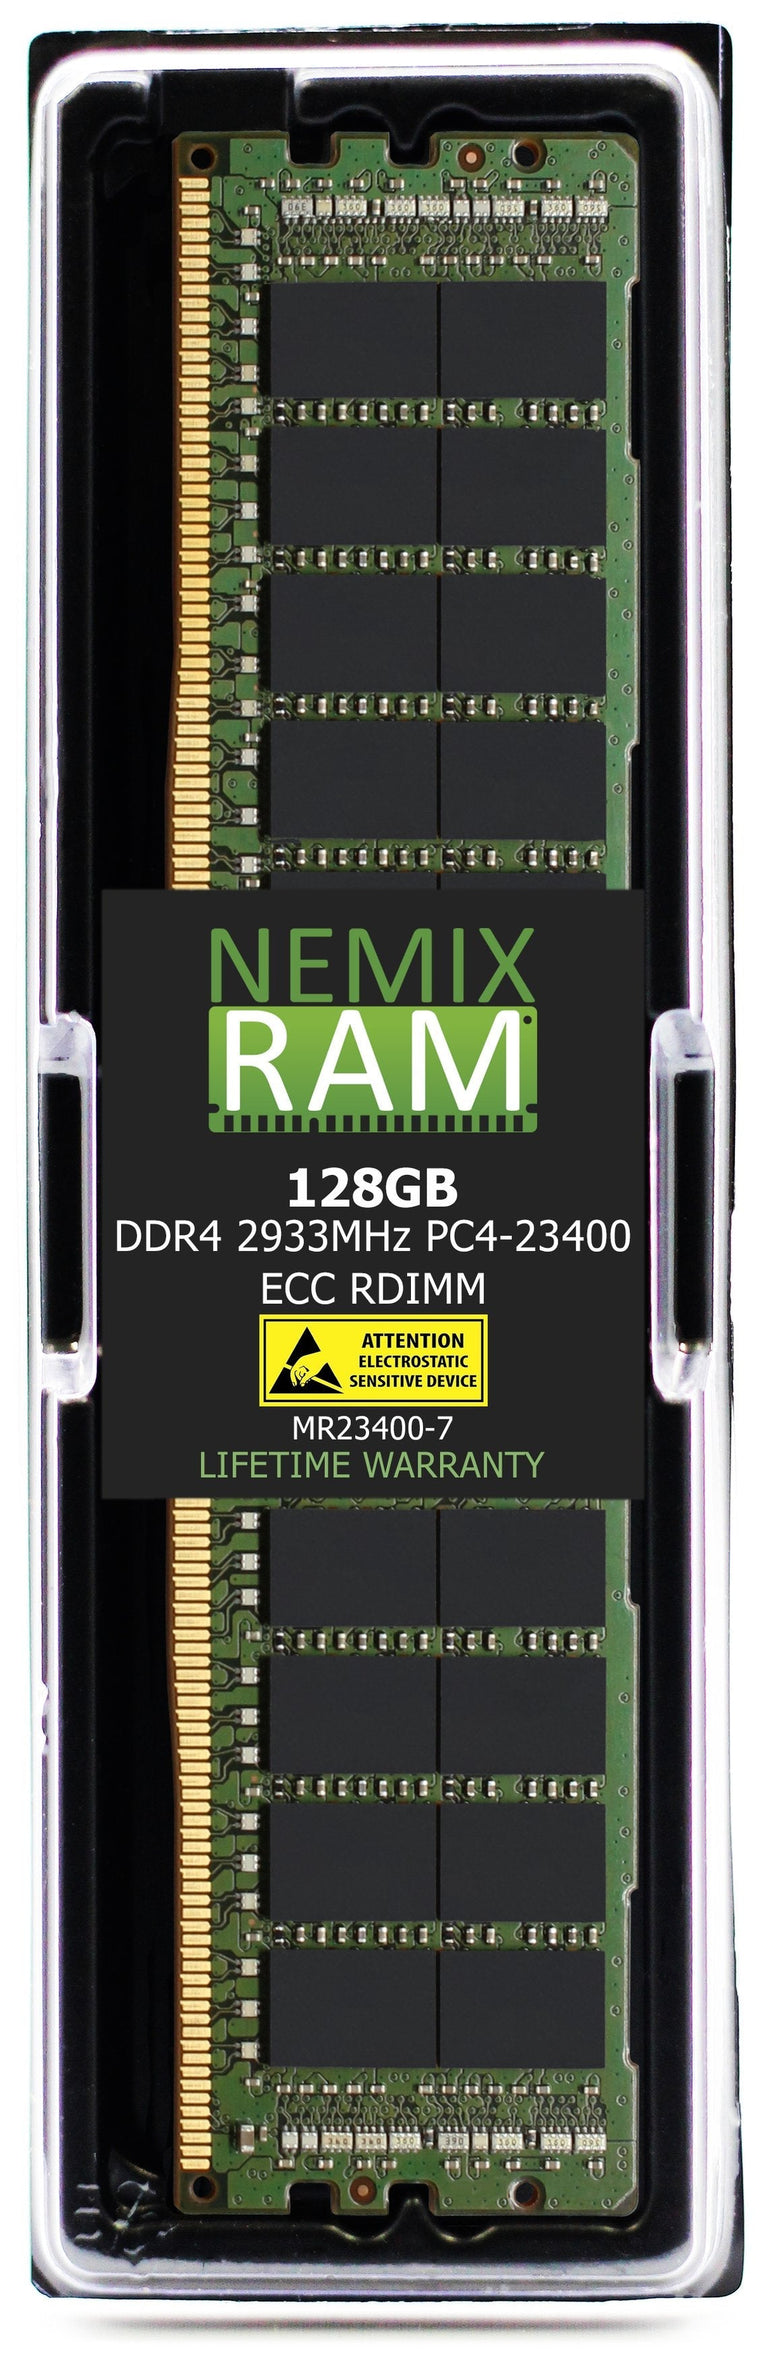 RDIMM DDR4-2933 PC4-23400